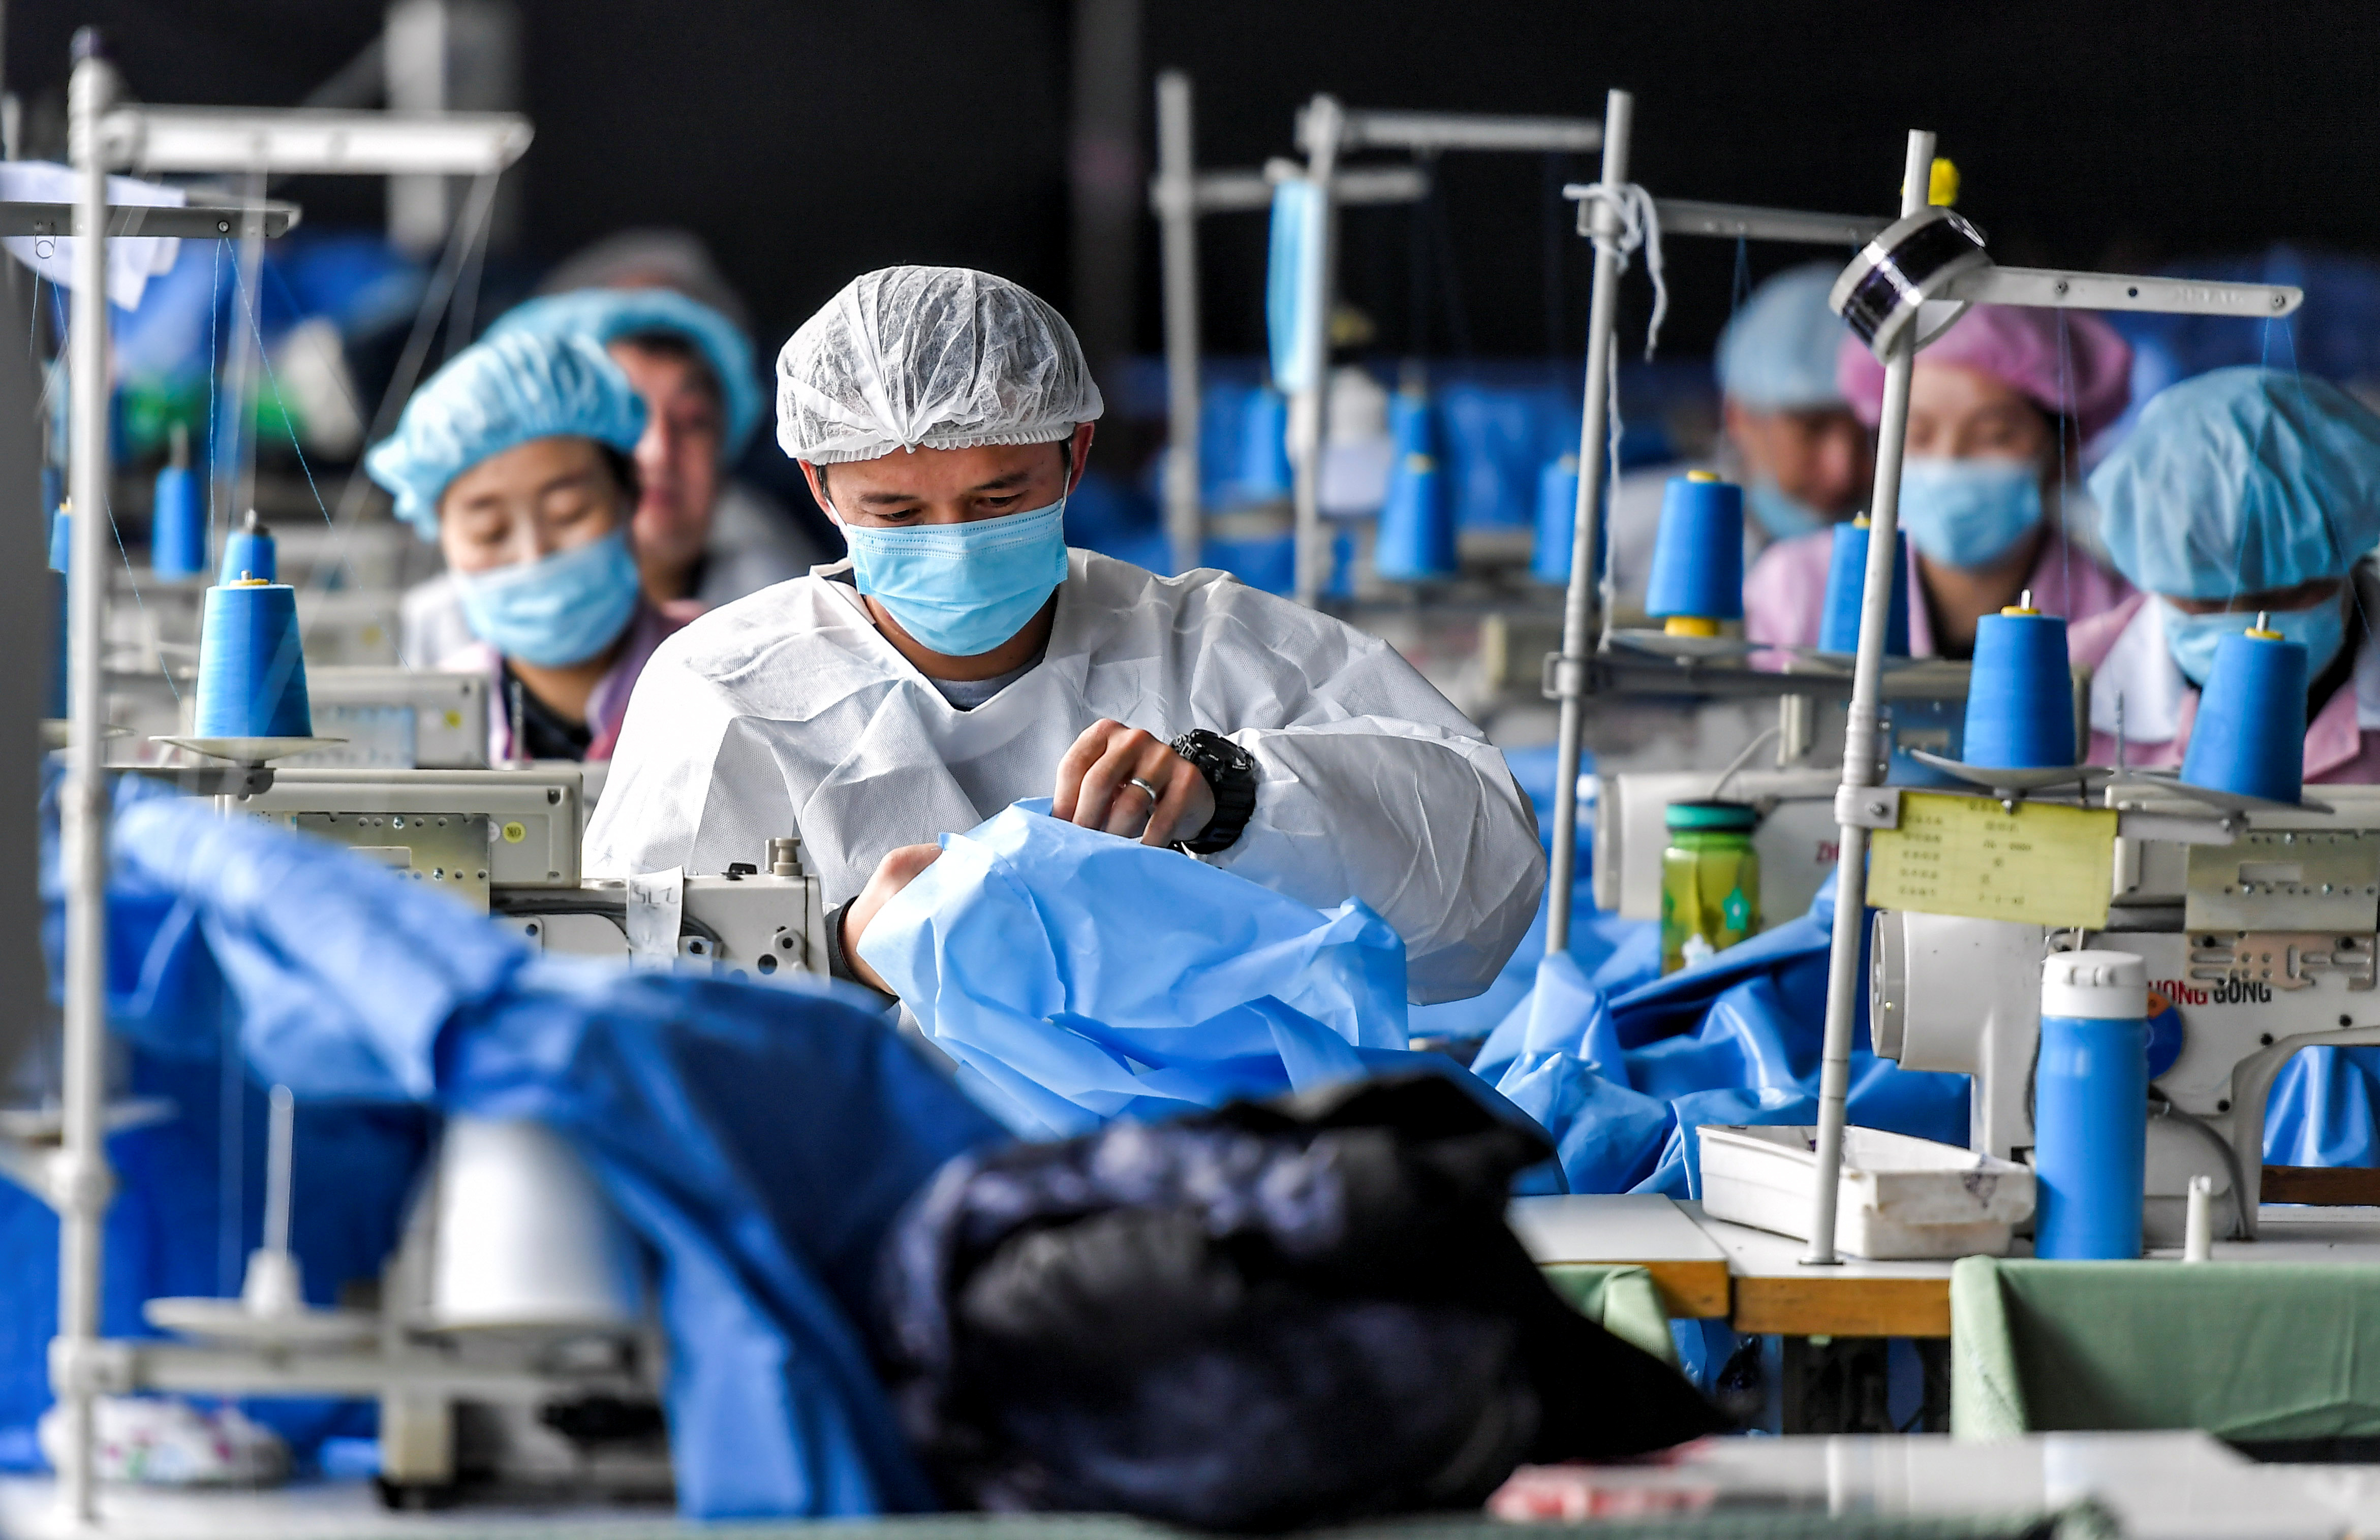 Trabajadores fabrican trajes de protección en una fábrica de equipos médicos en Urumqi, Región Autónoma Uigur de Xinjiang, China. Foto tomada el 27 de enero de 2020 (REUTERS)